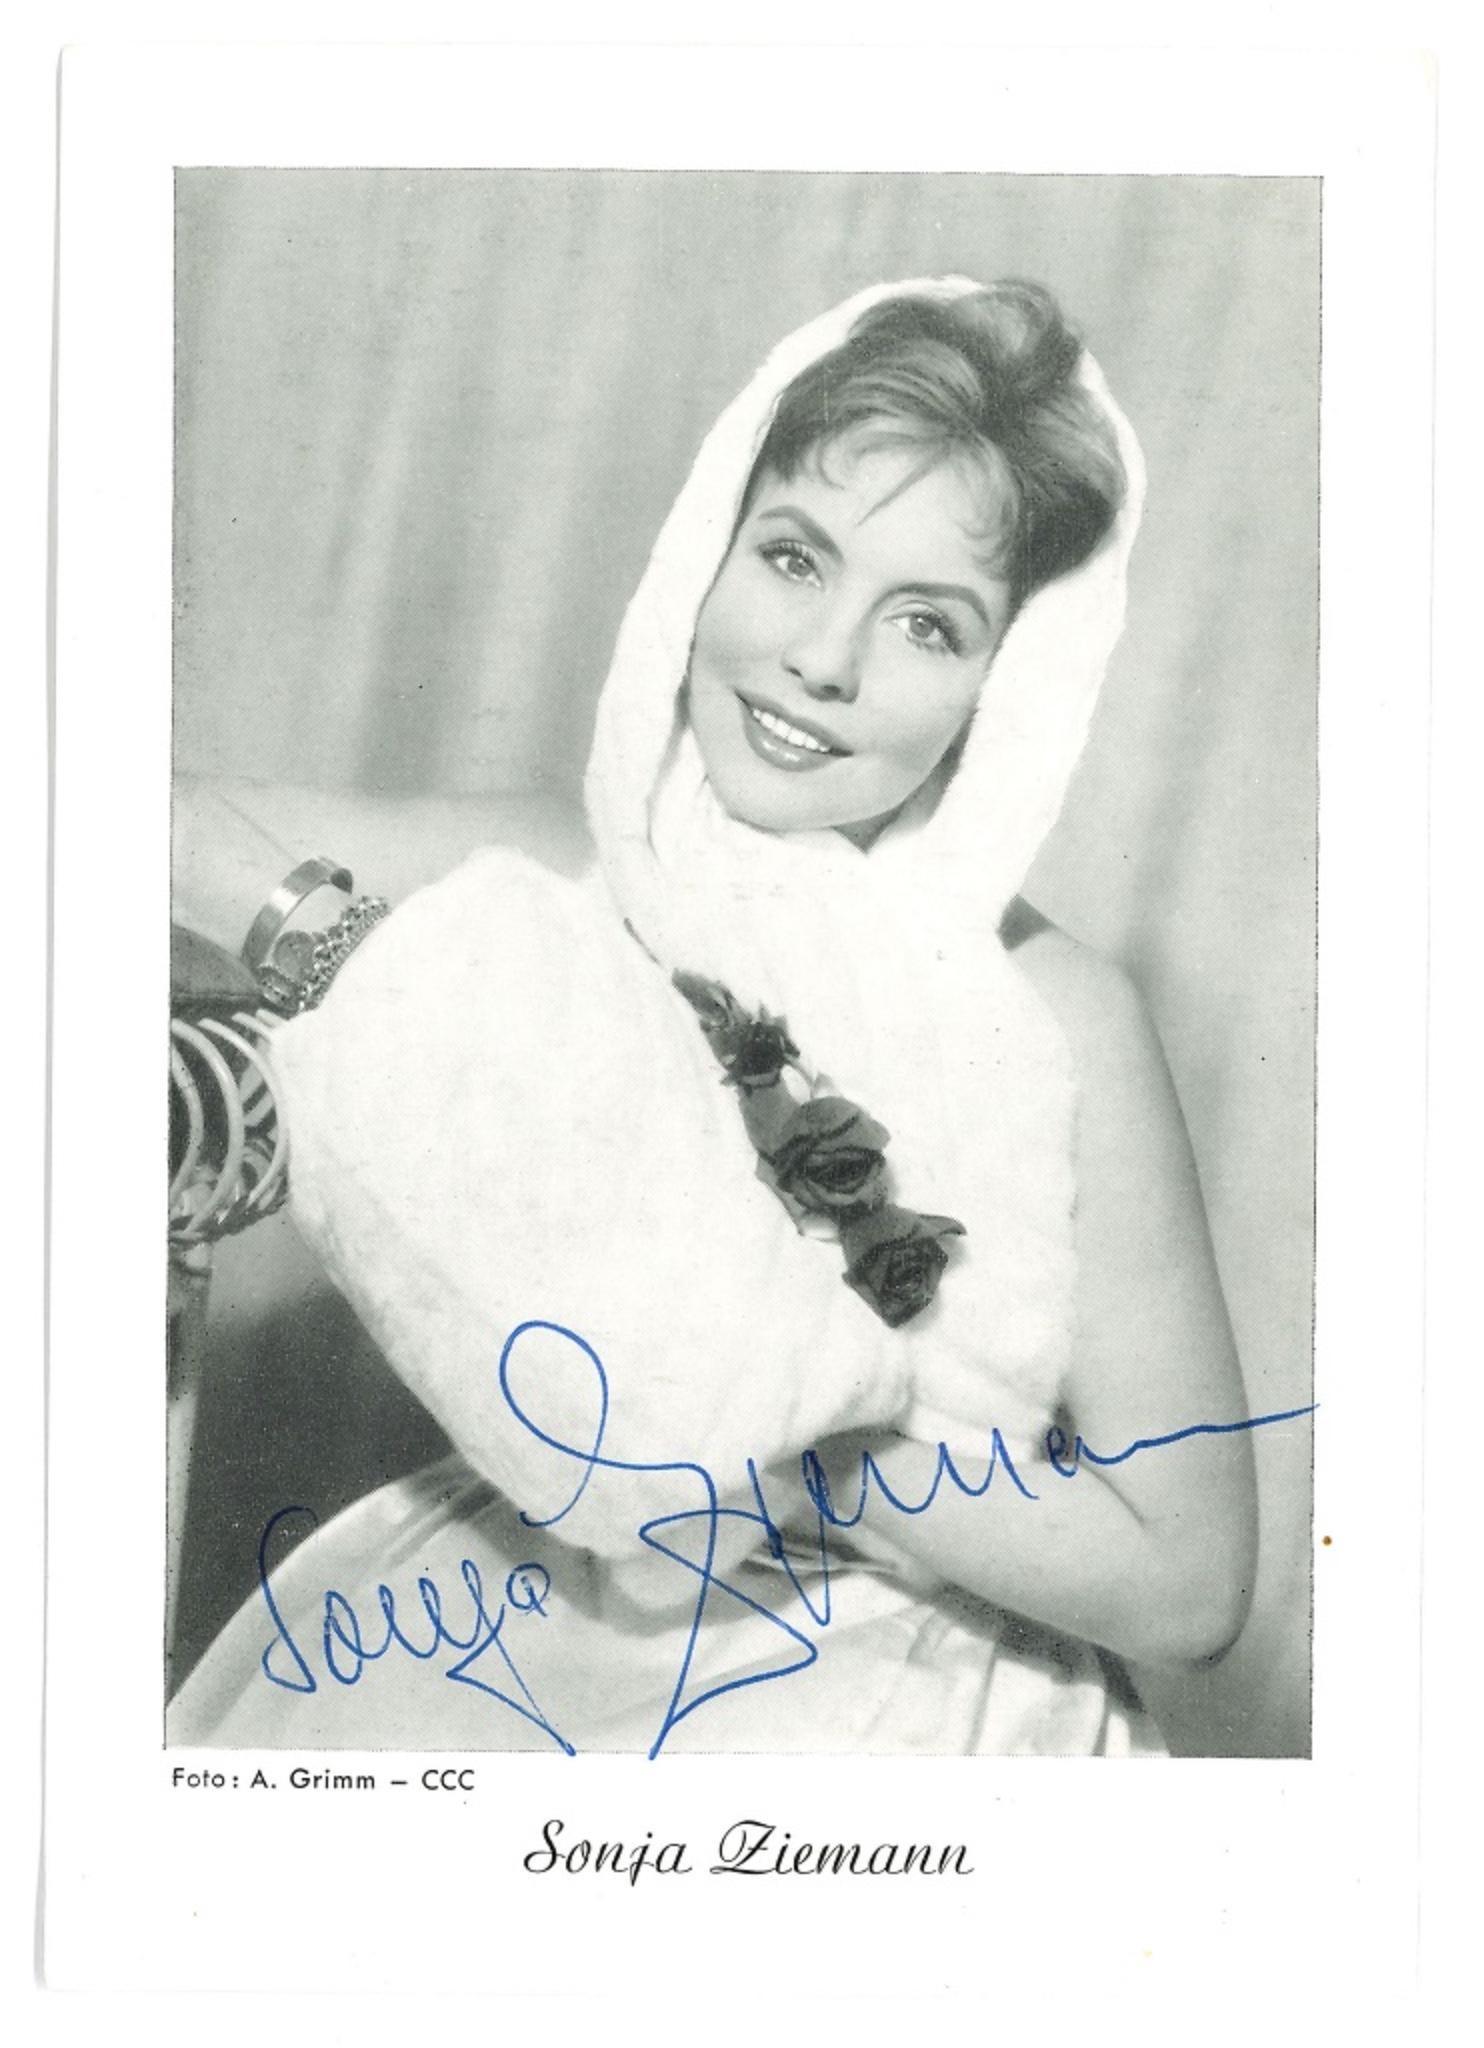 Unknown Portrait Photograph - Autograph Portrait of Sonja Ziemann - Original b/w Postcard - 1960s